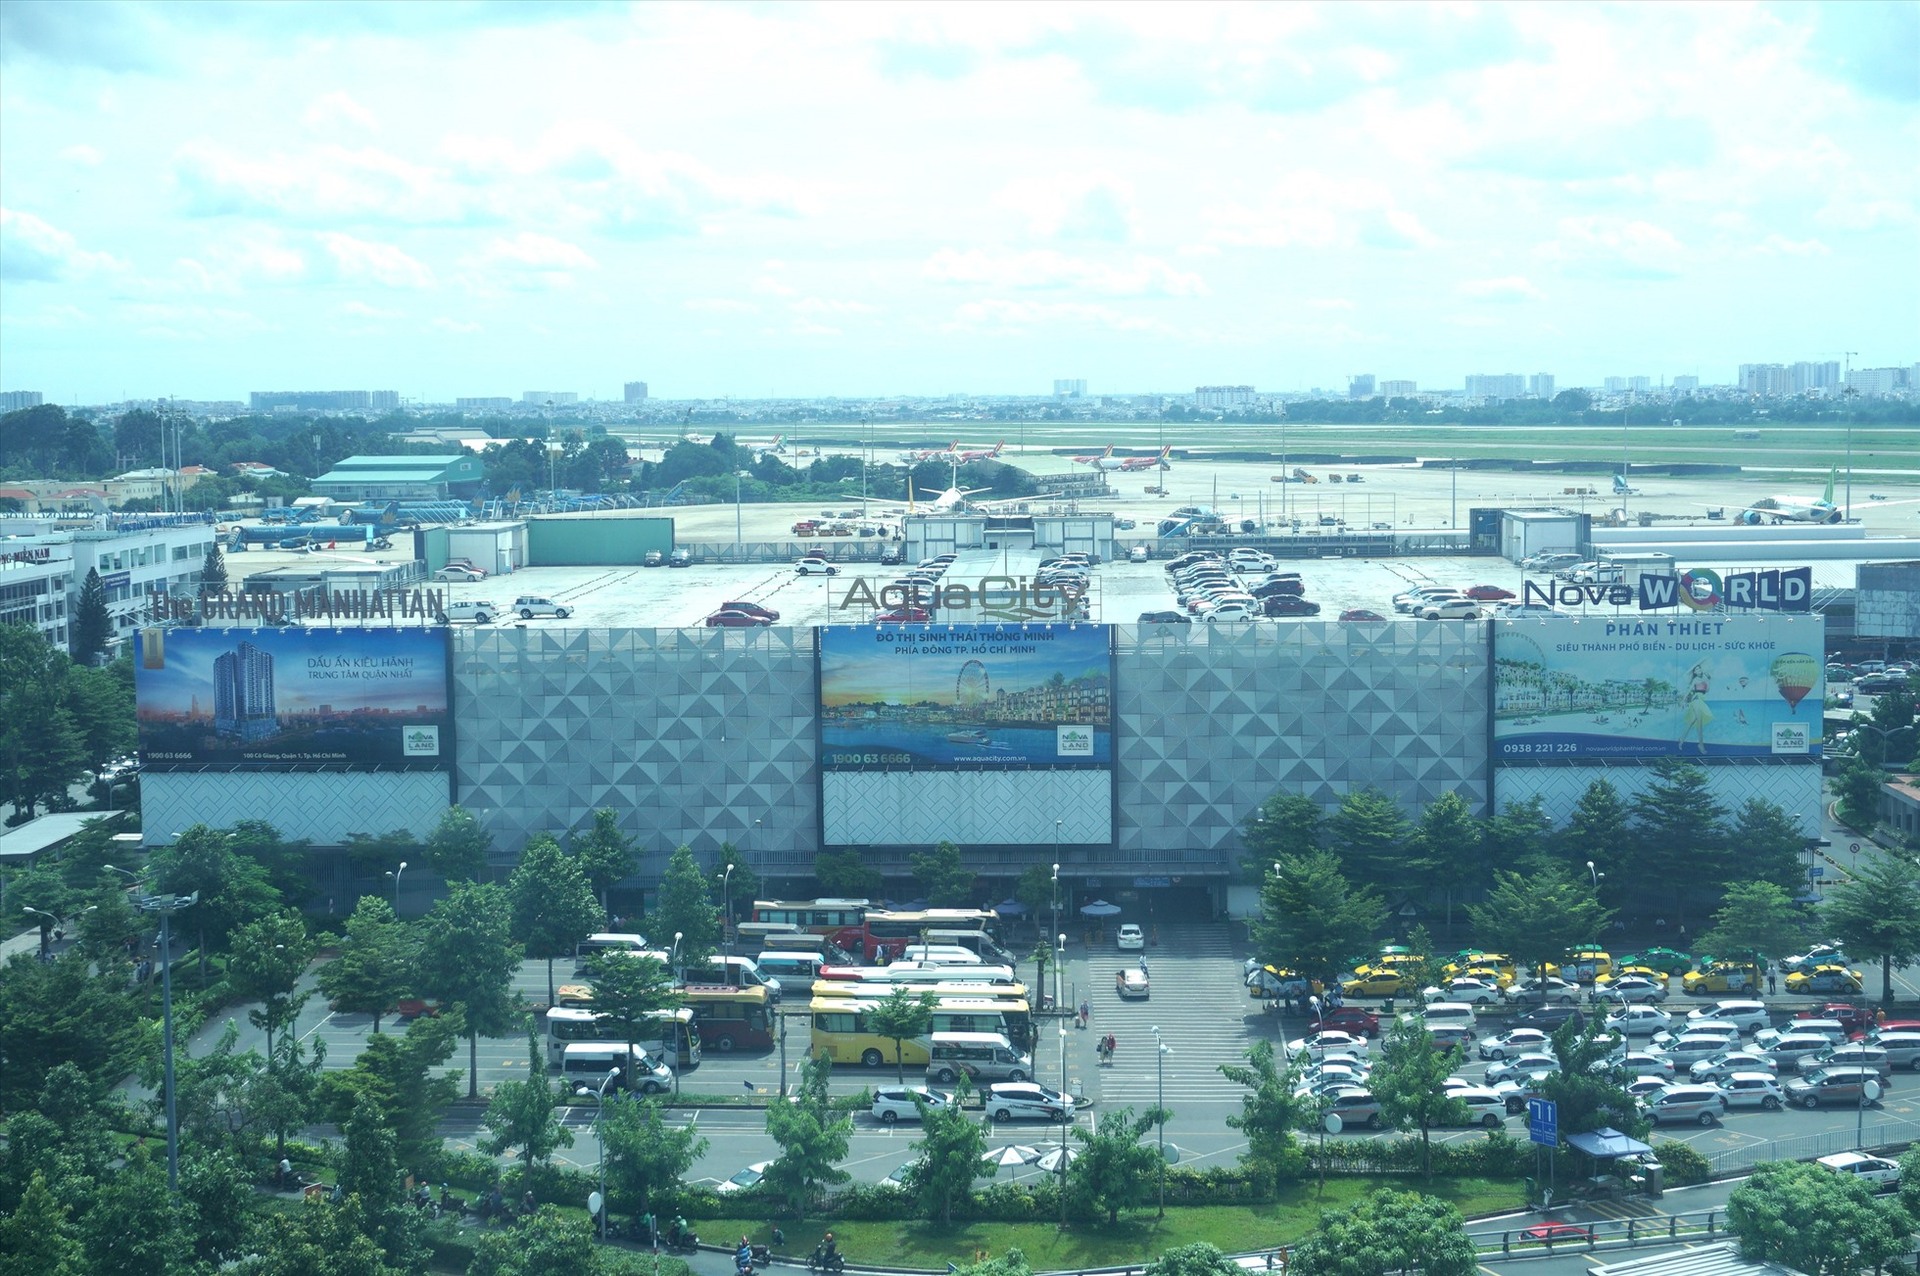 Nhà xe cao tầng lắp ghép ở sân bay Tân Sơn Nhất với công suất 6.000 xe máy, 1.500 xe ôtô và 700 xe taxi. Ảnh: Lao động